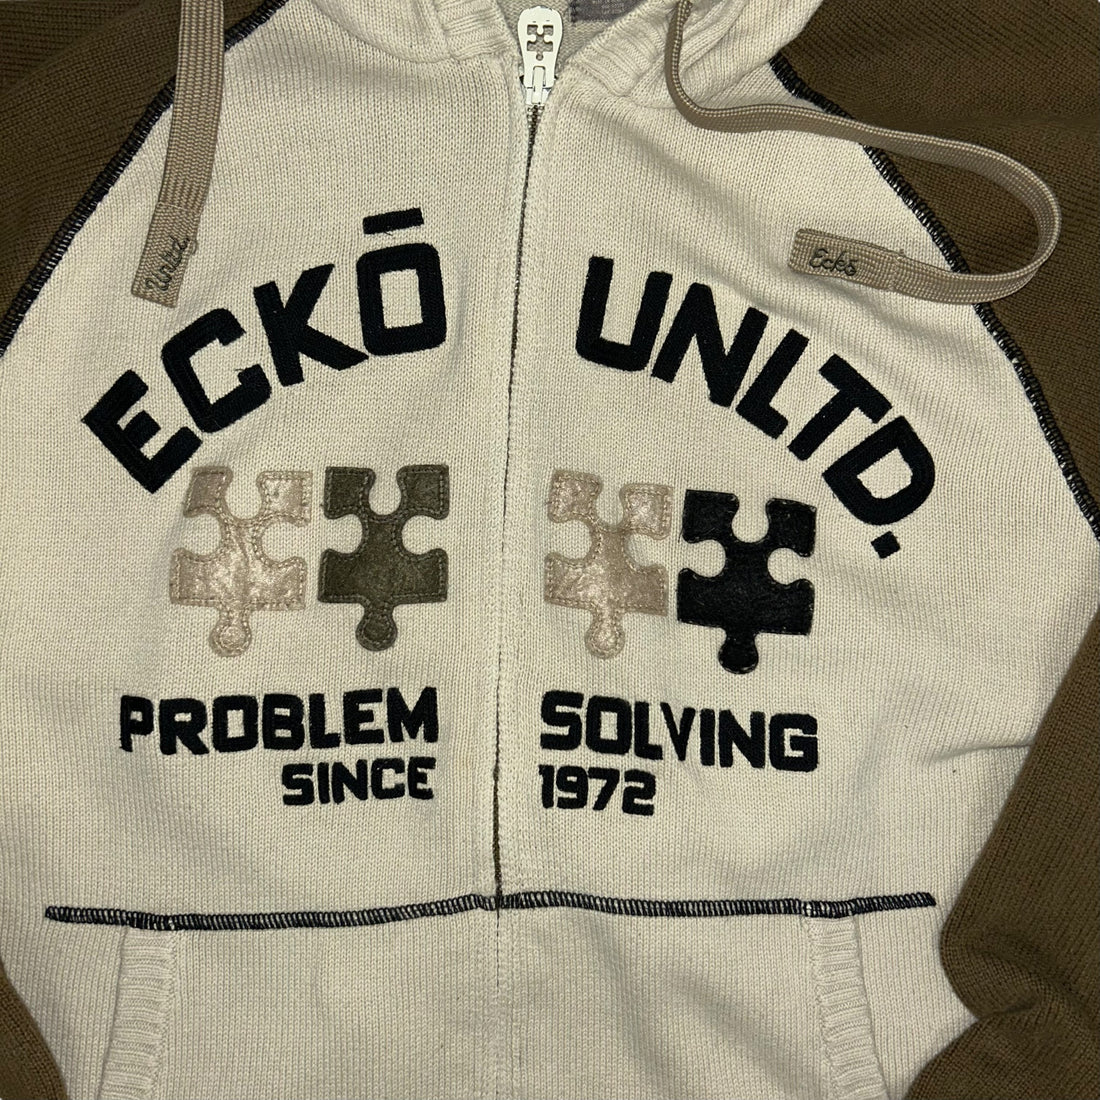 Felpa Ecko Problem Solving (L)